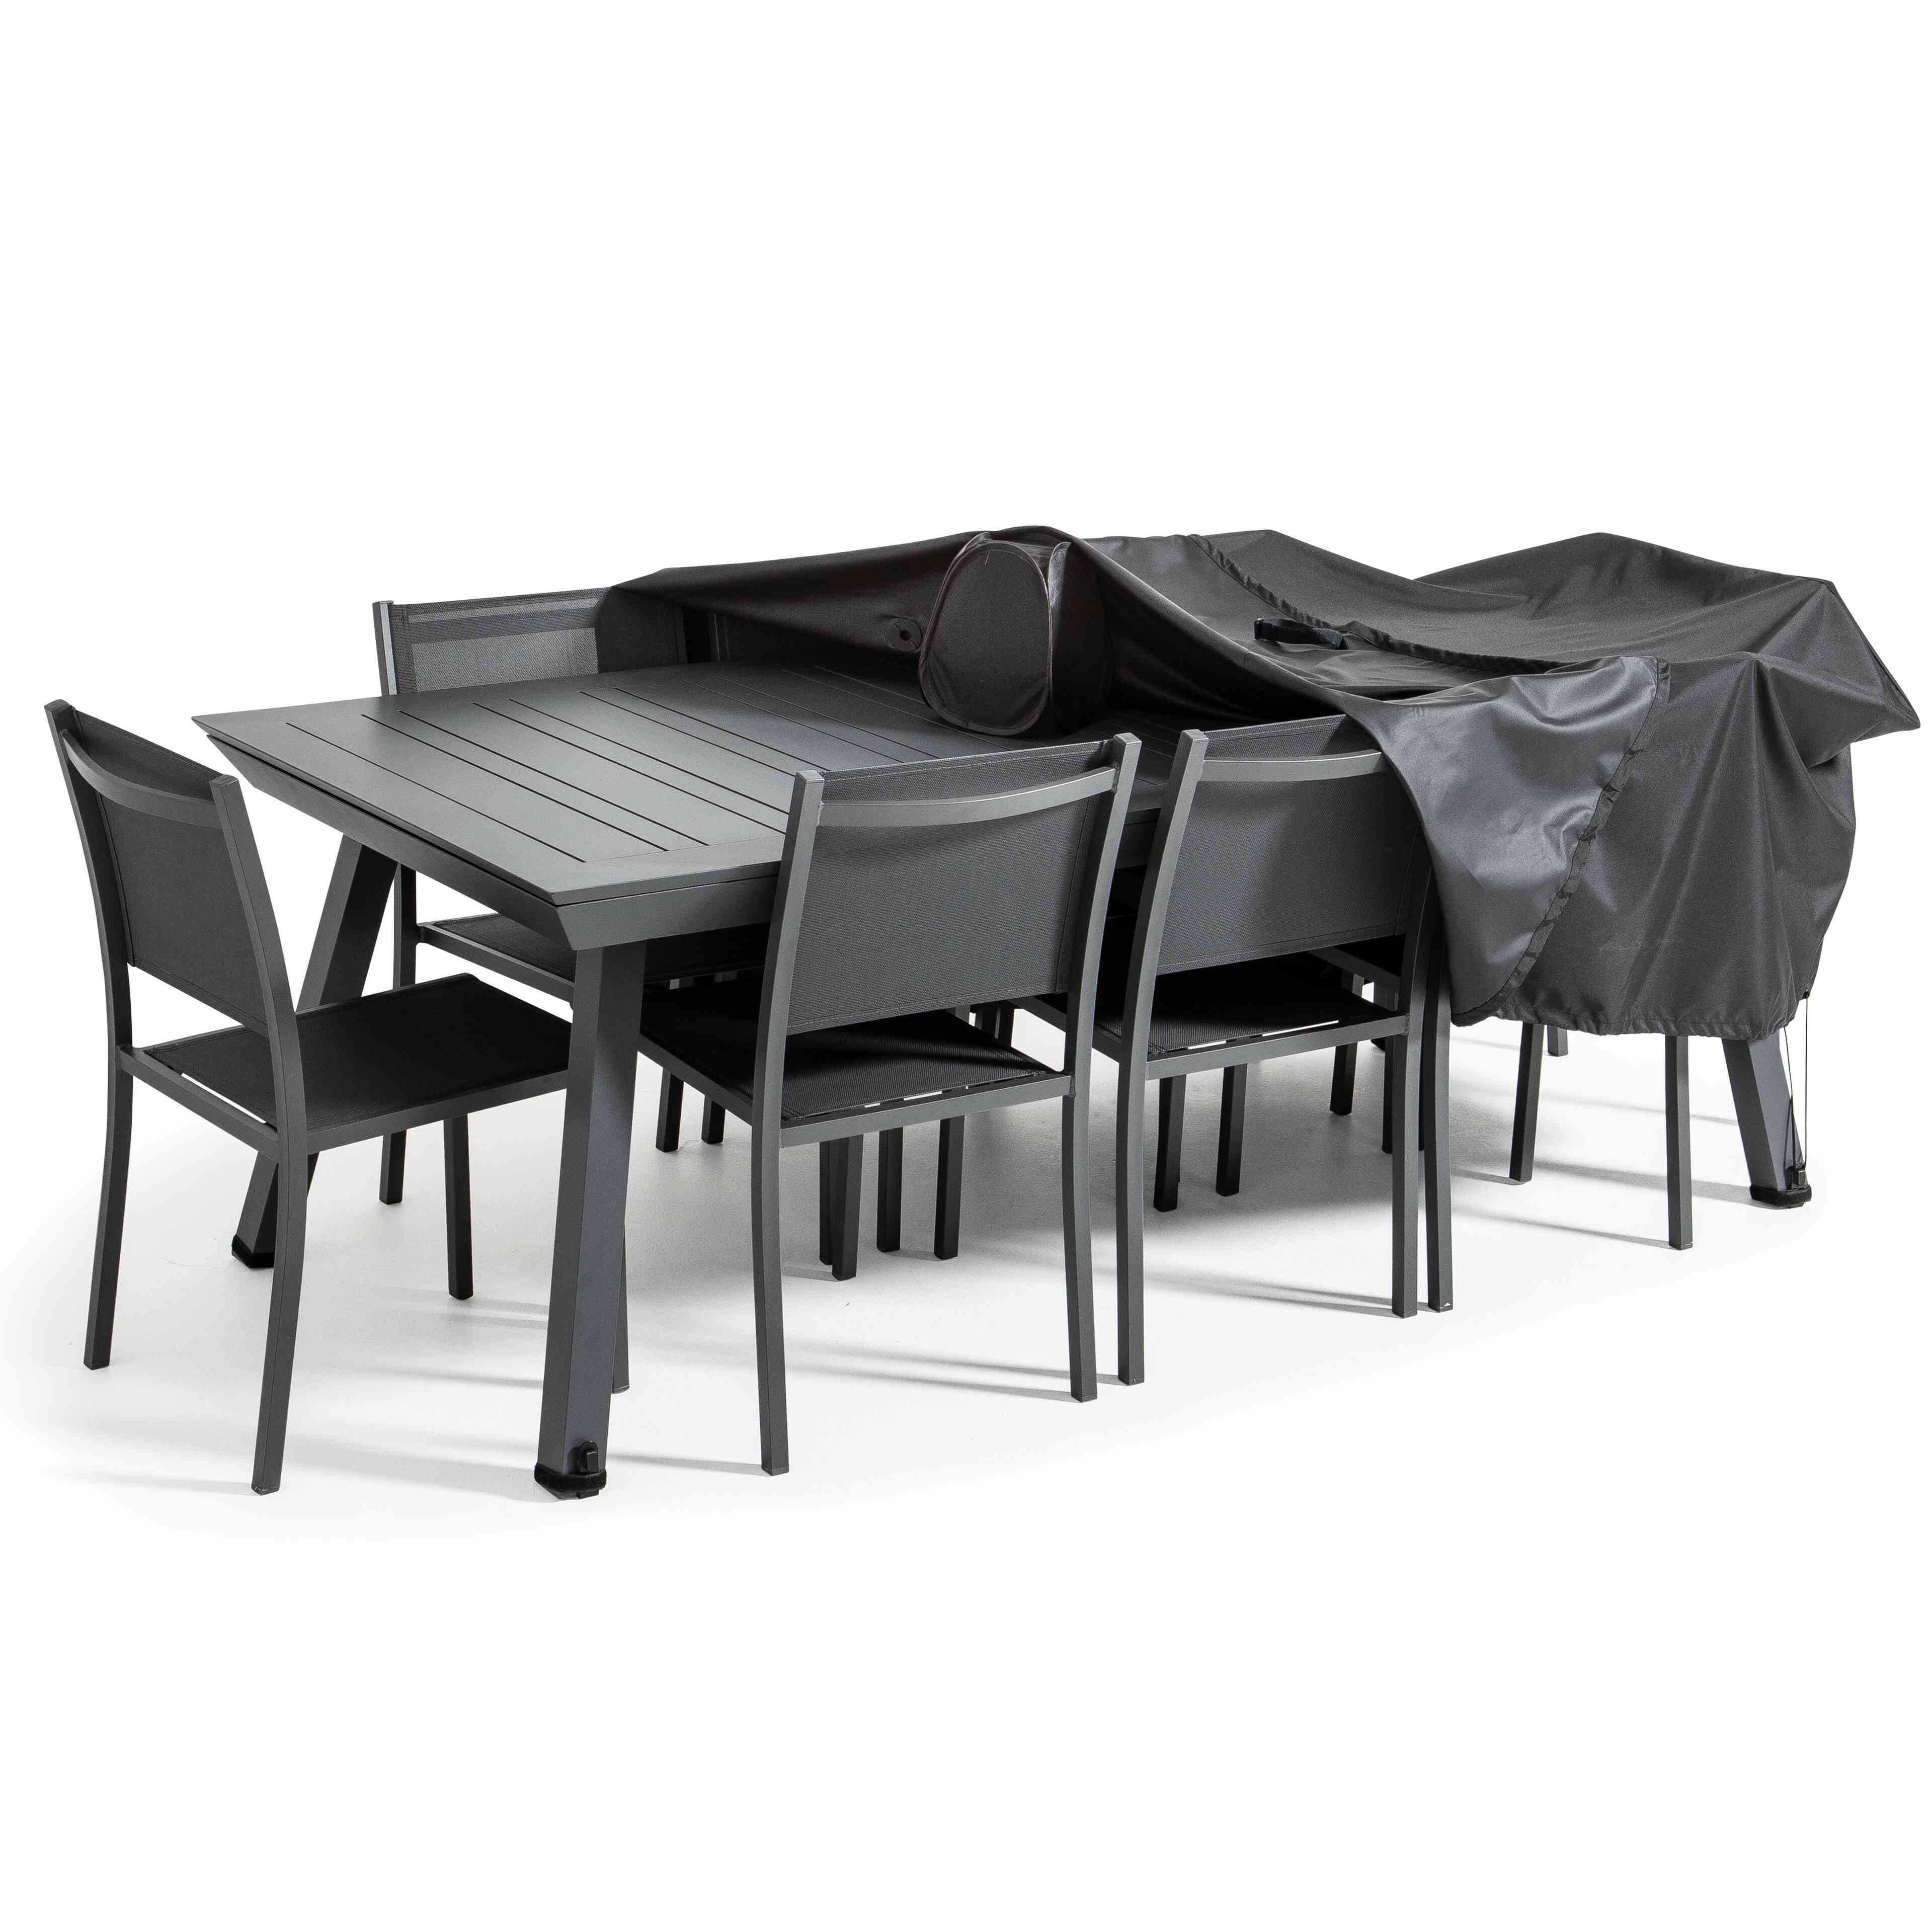 Housse pour table et chaises de jardin, dimensions 310 x 140 cm